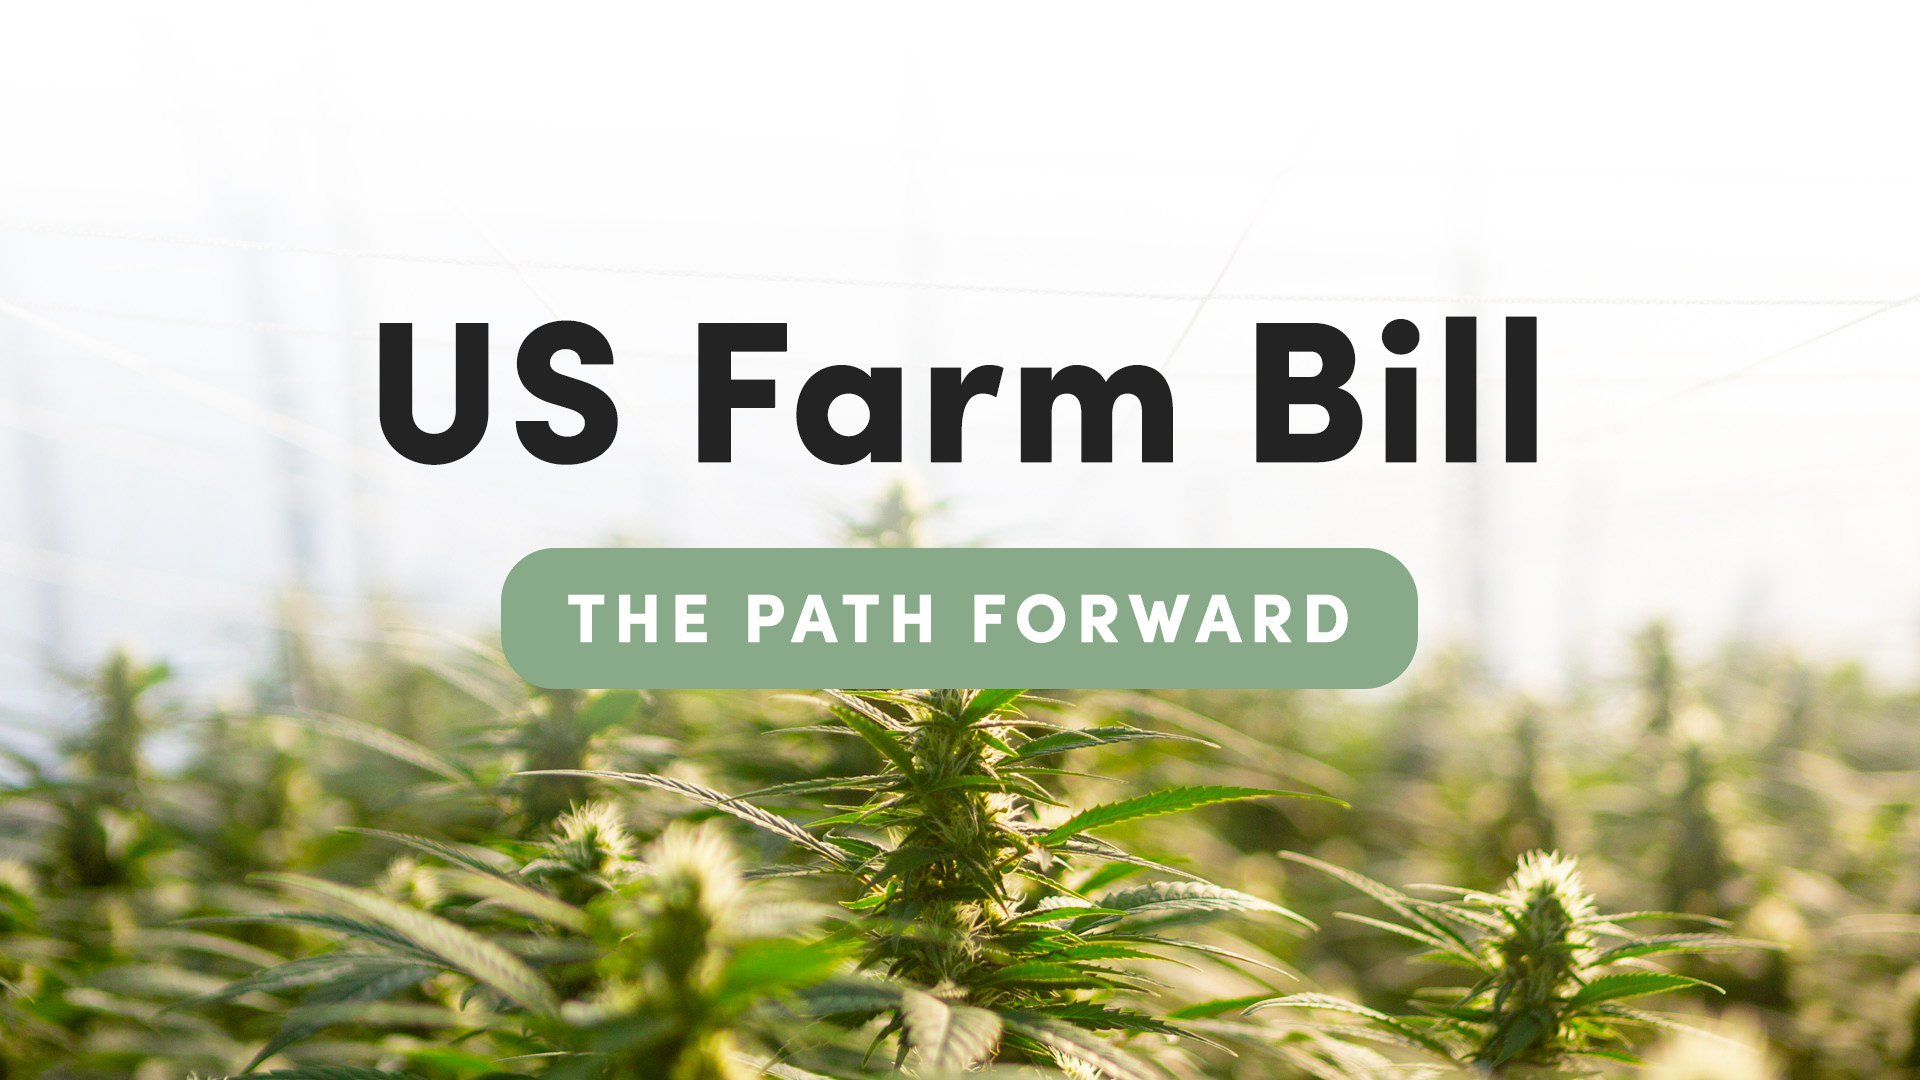 The Farm Bill & the path forward